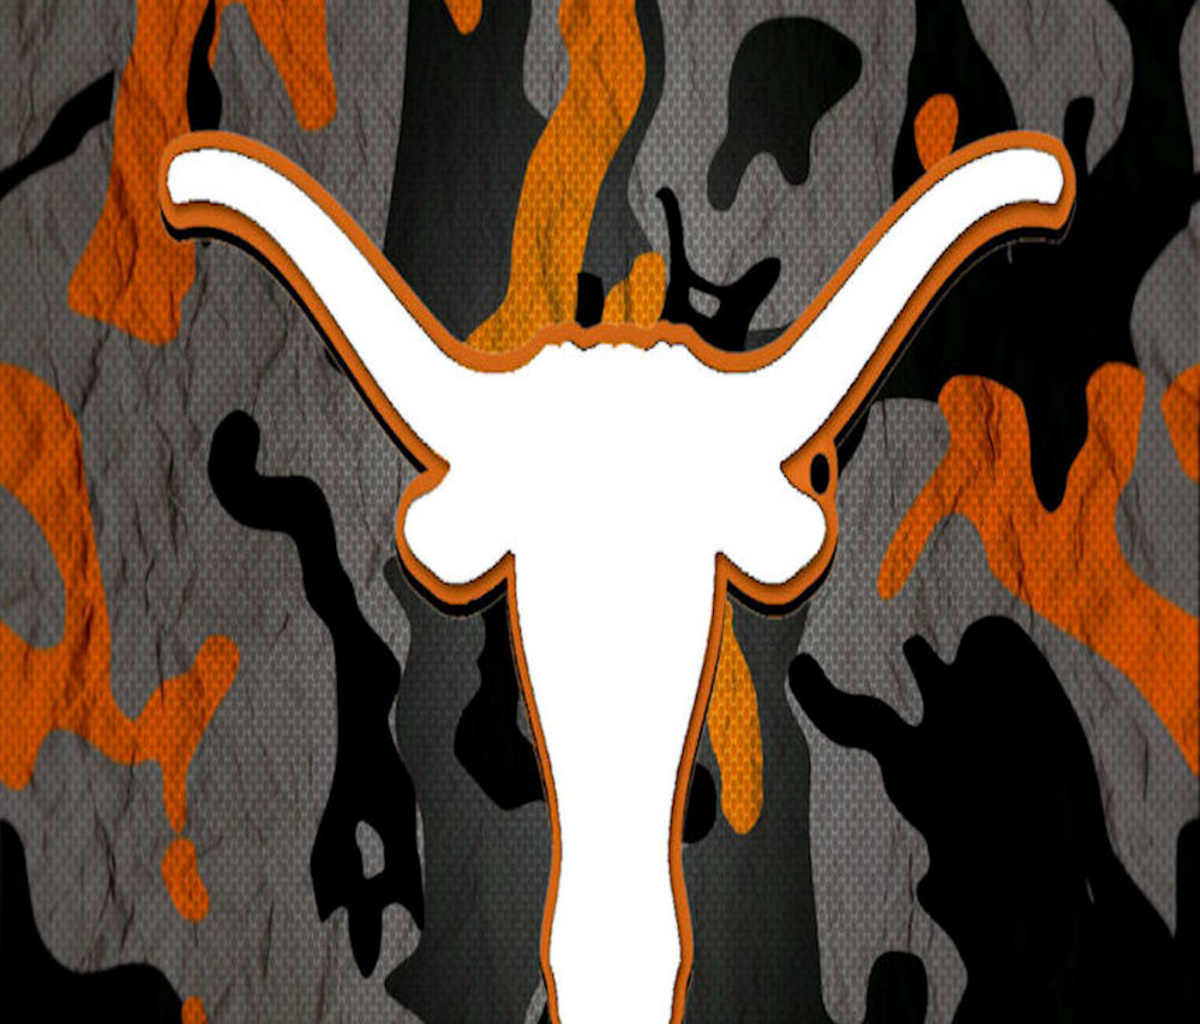  Best Texas Longhorn 1200x1024 wallpaper1200X1024 wallpaper screensaver